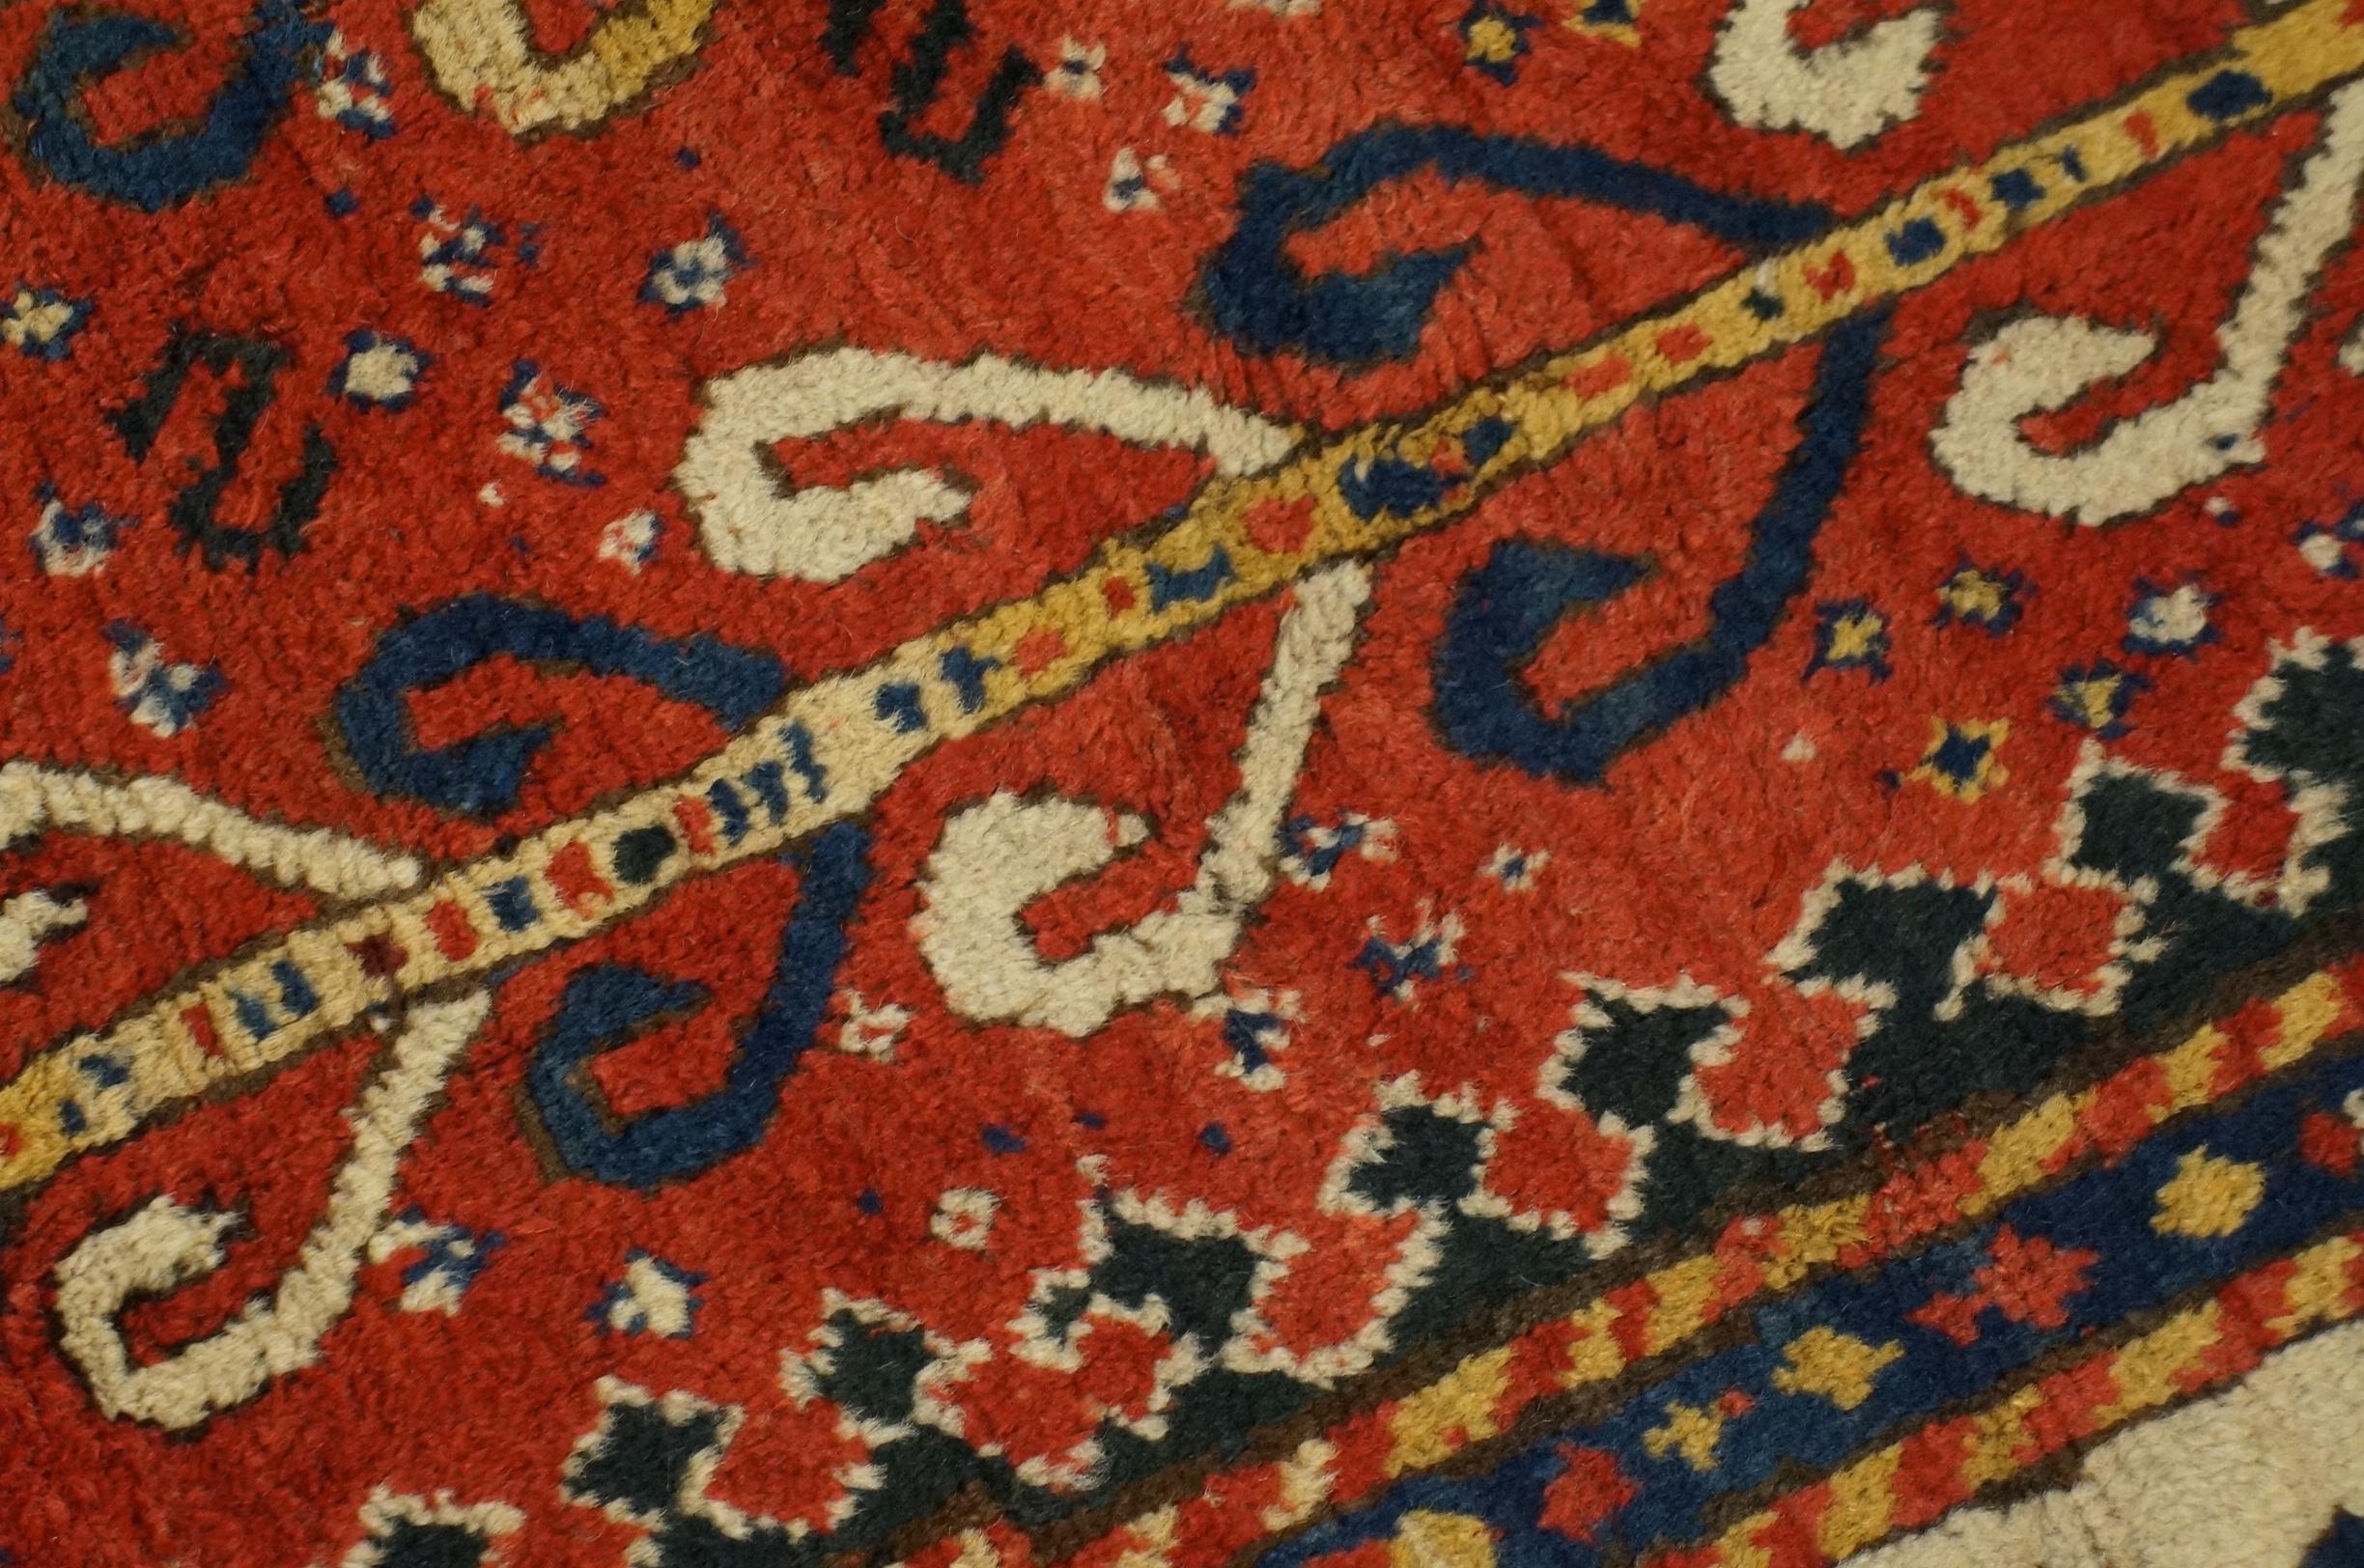 19th Century Caucasian Sewan Kazak Carpet 
5'10